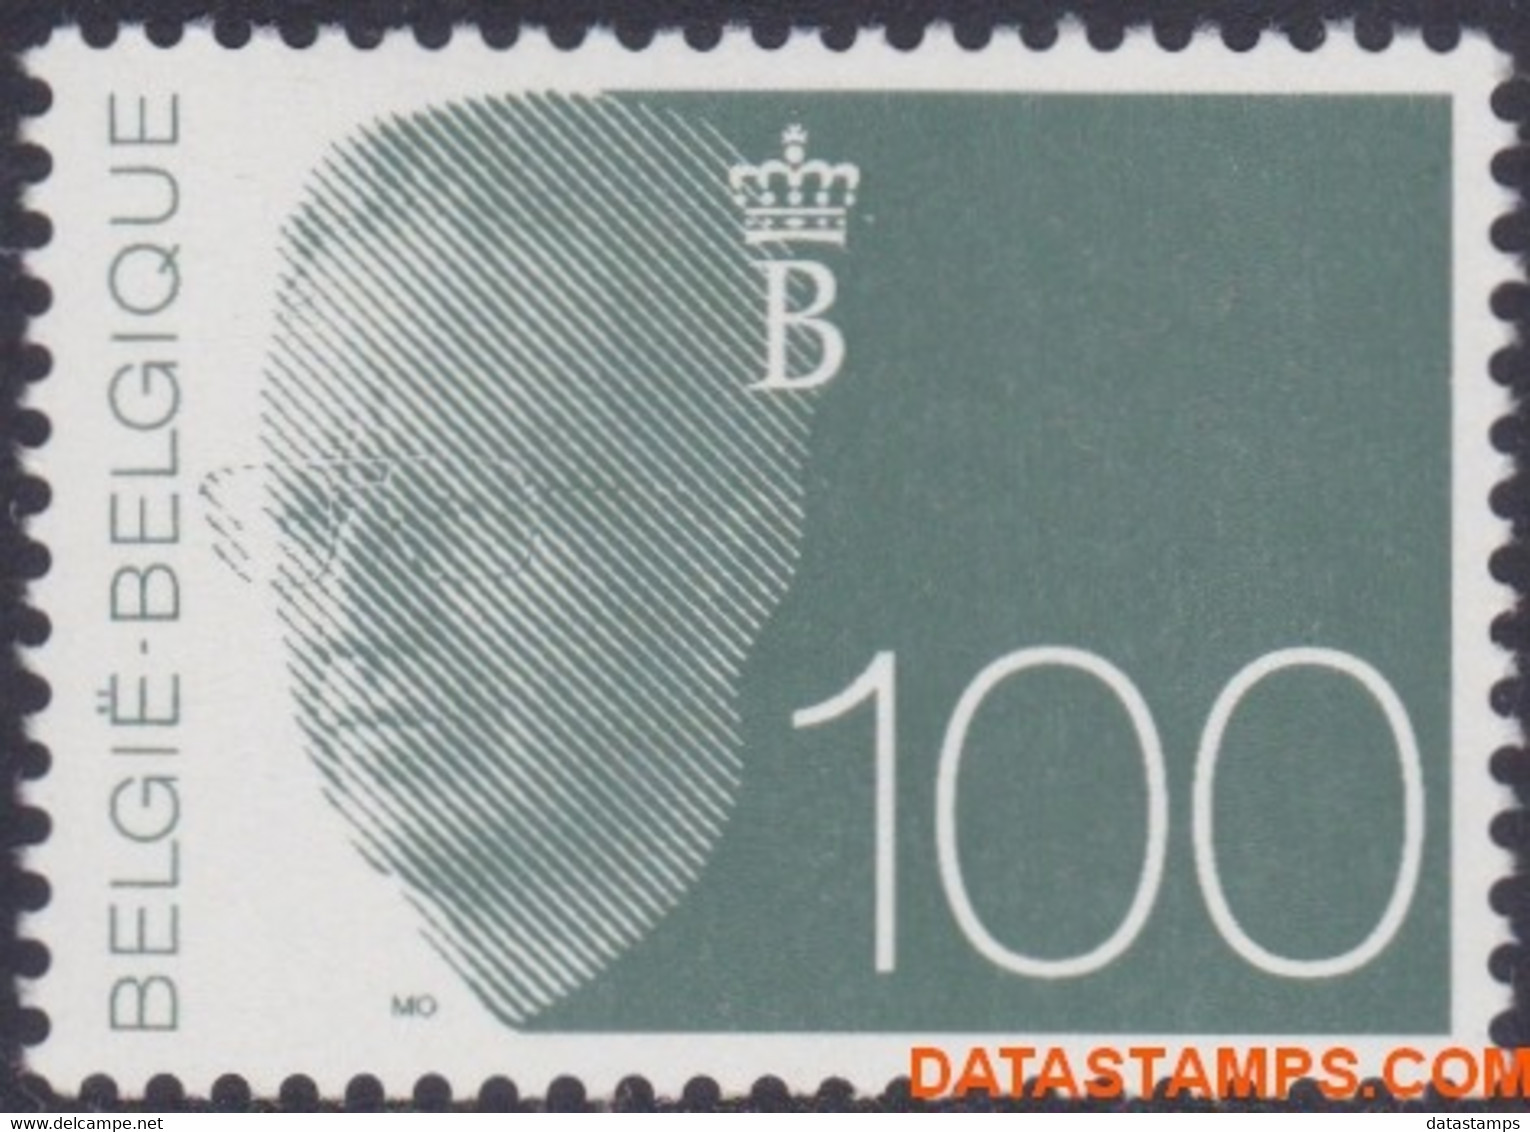 België 1992 - Mi:2533, Yv:2481, OBP:2481, Stamp - XX - King Baudouin Olyff - 1990-1993 Olyff